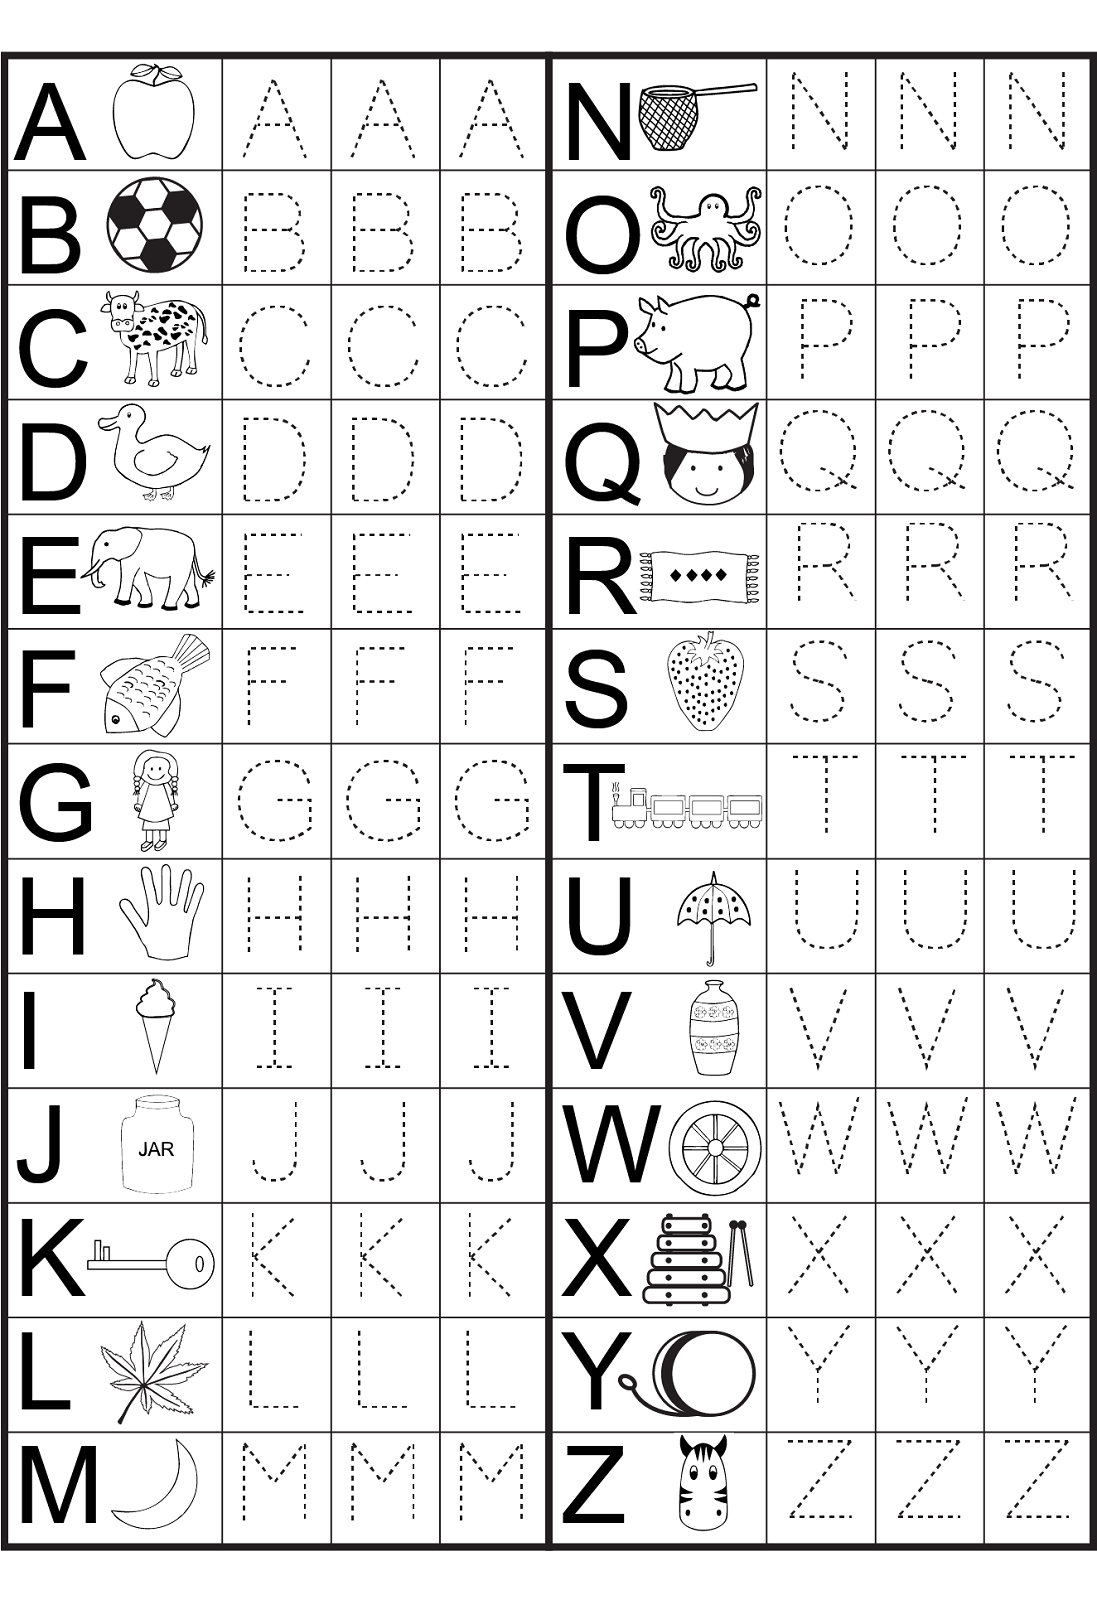 Kindergarten Alphabet Worksheets To Print | Preschool inside Alphabet Numbers Worksheets